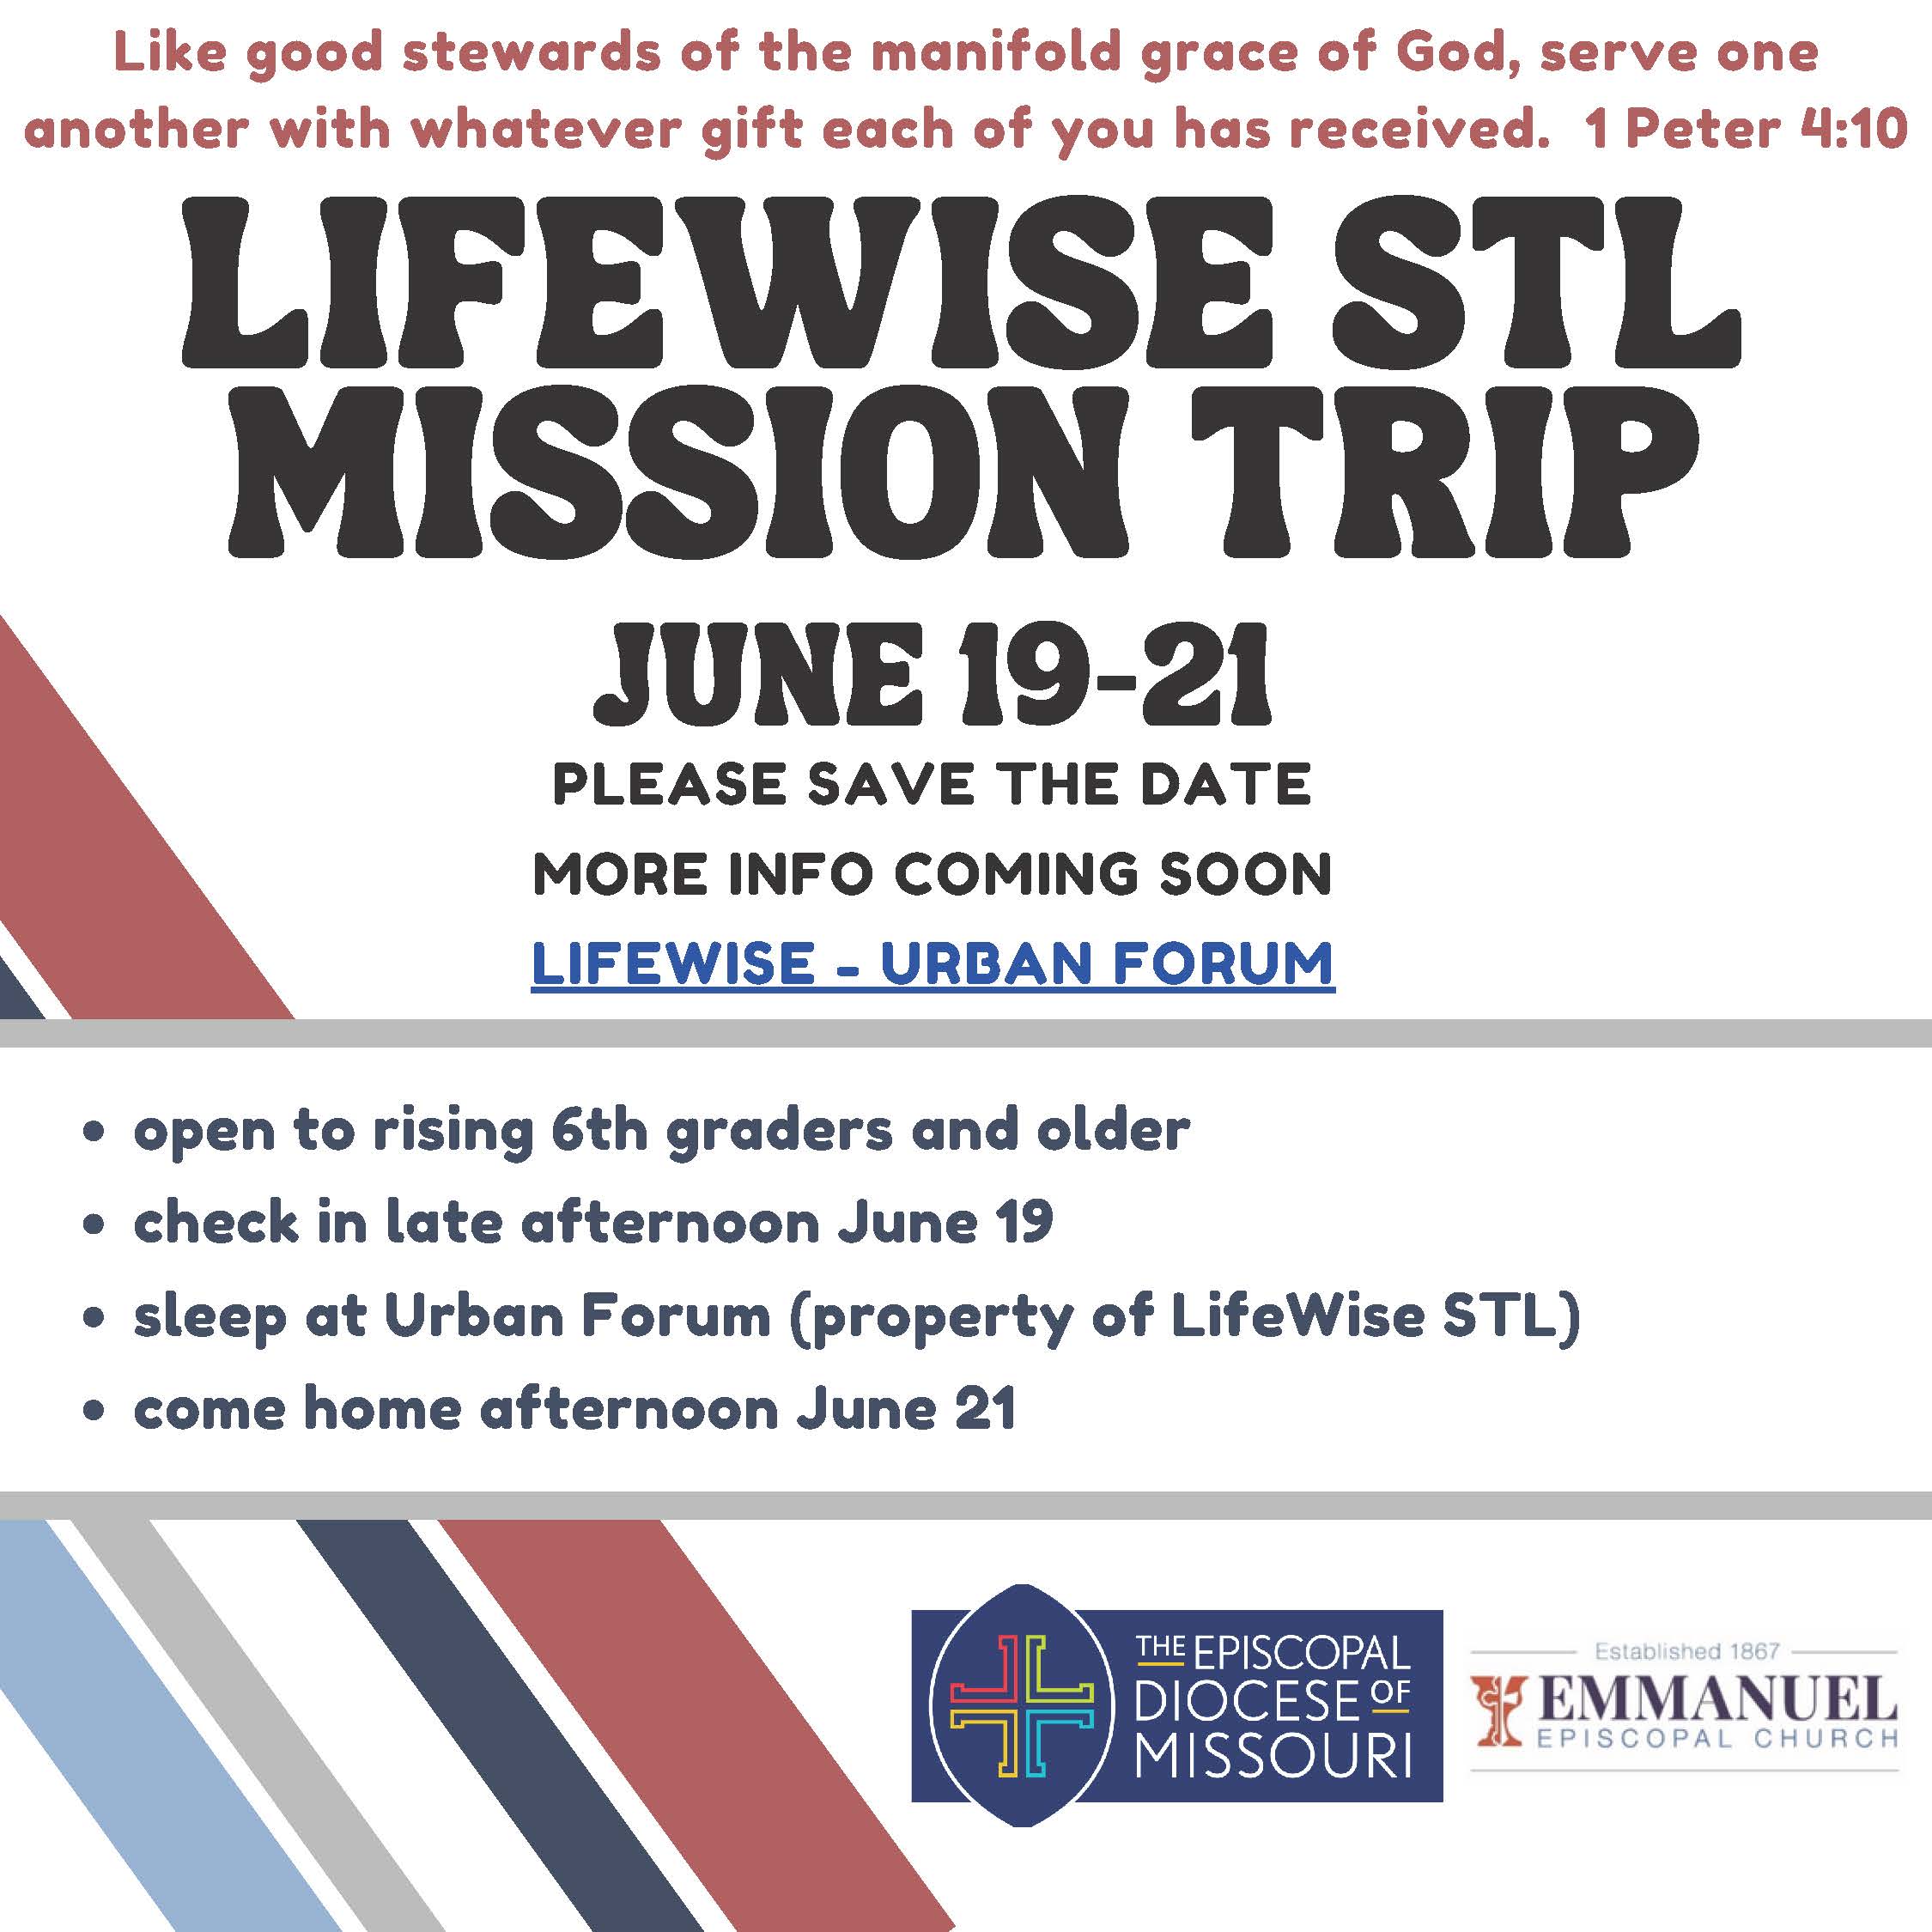 lifewise-stl-urban-forum-mission-trip_674